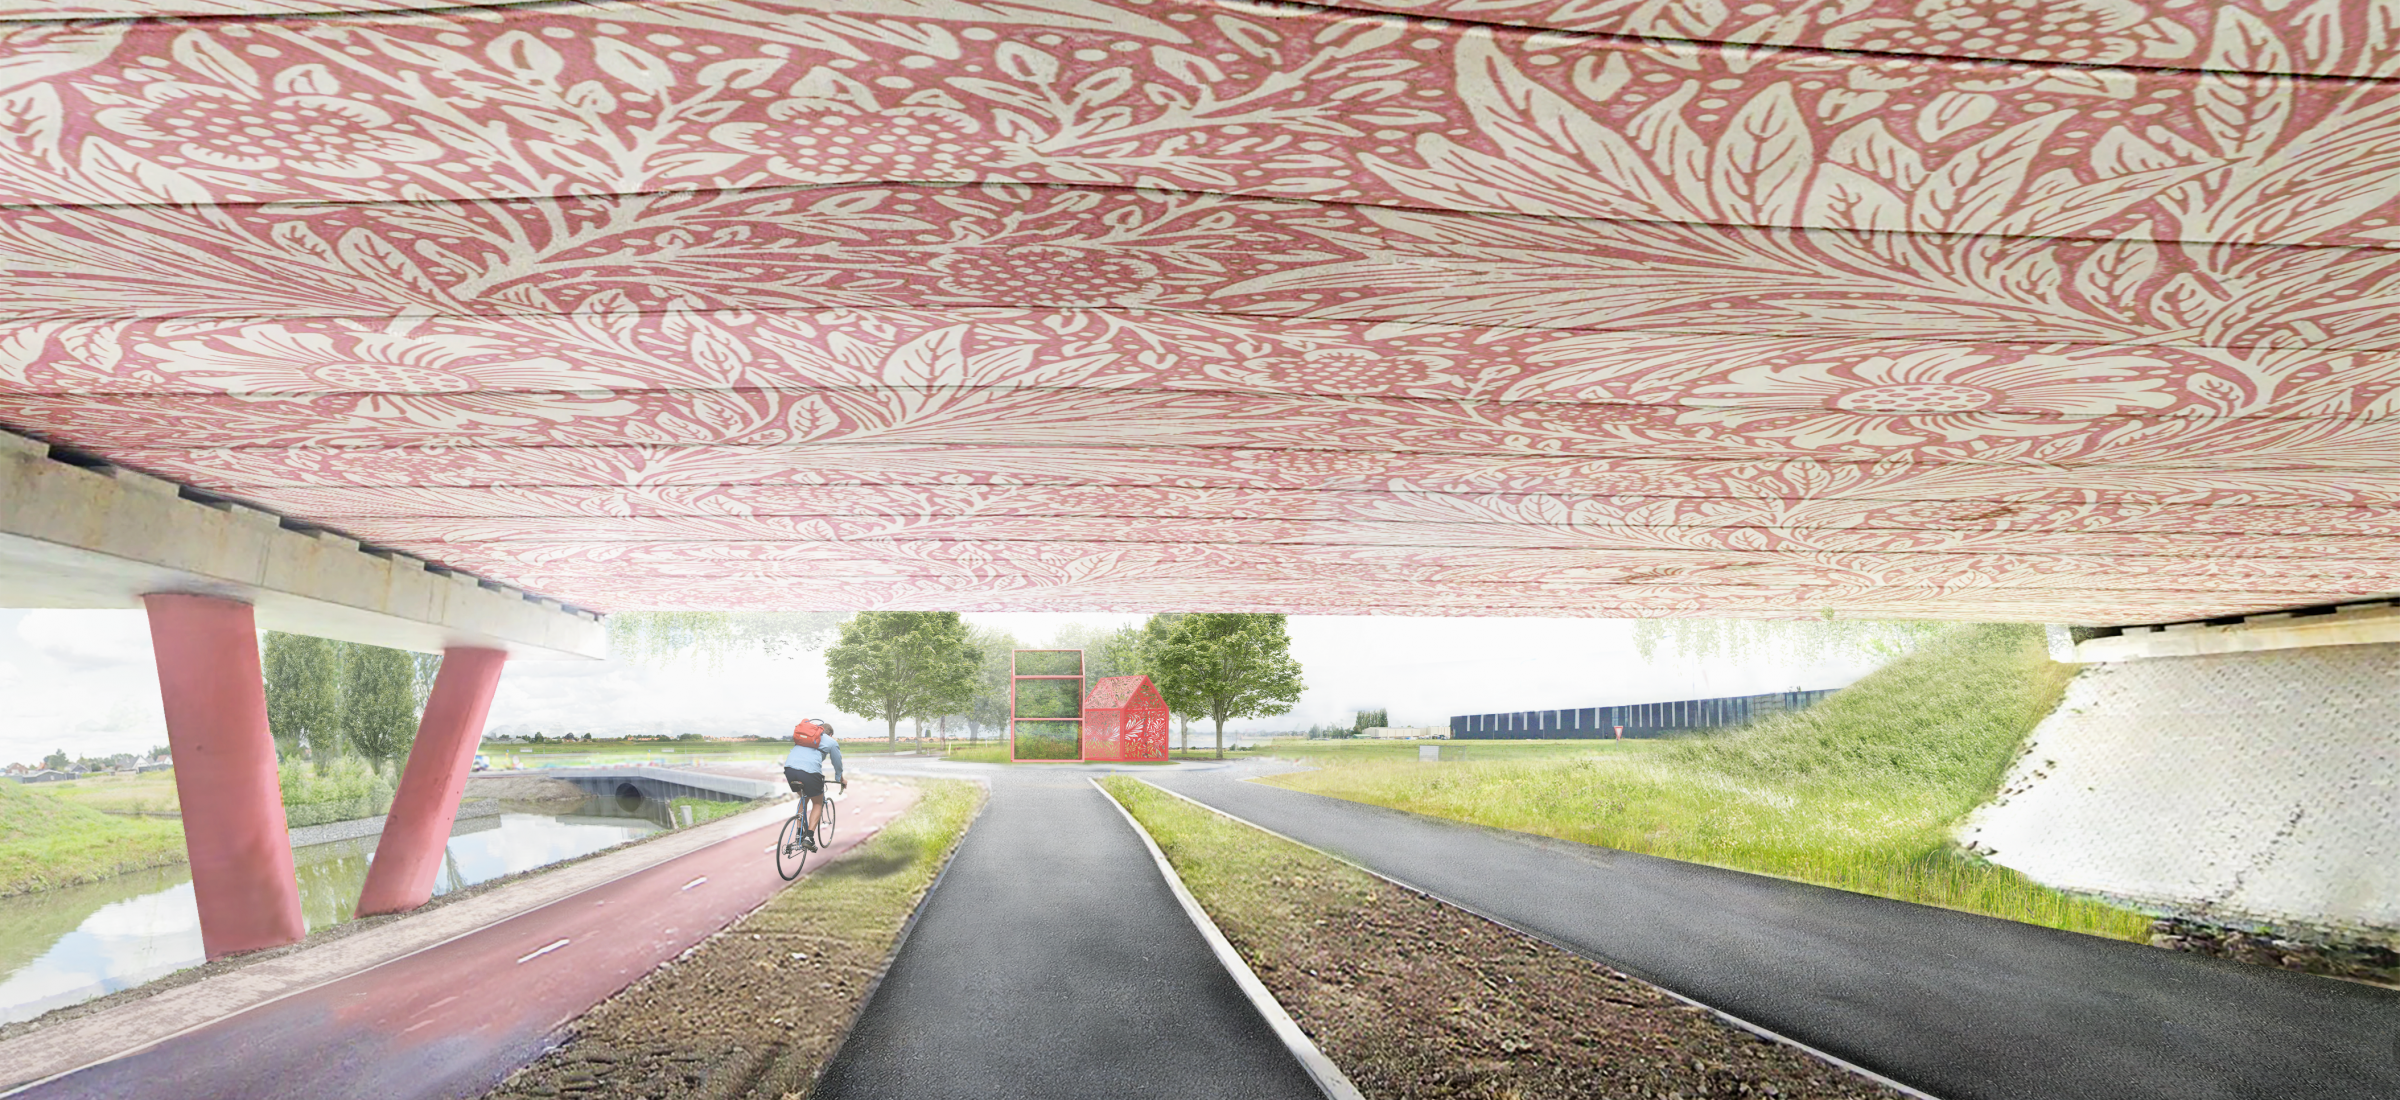 Green Park Aalsmeer concept image